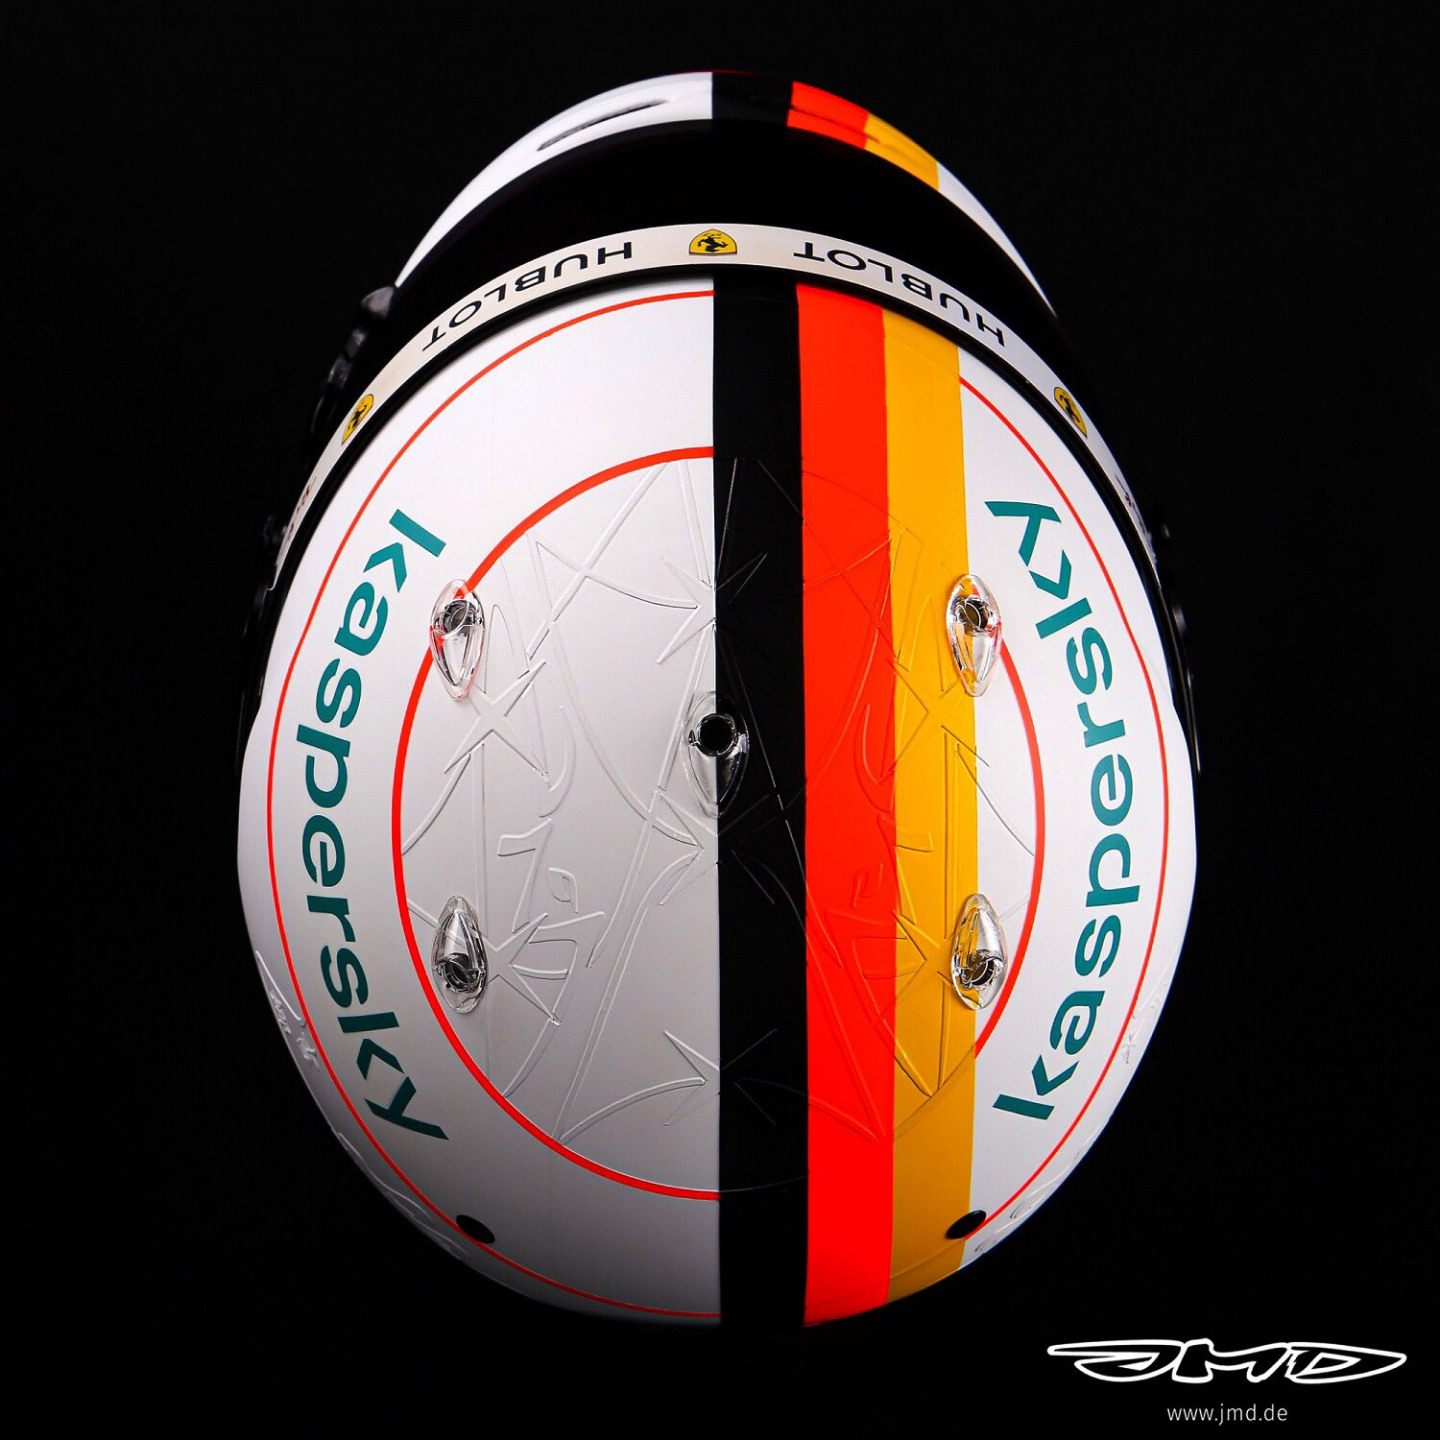 Фото: Шлем Себастьяна Феттеля к Гран При Айфеля в честь Михаэля Шумахера